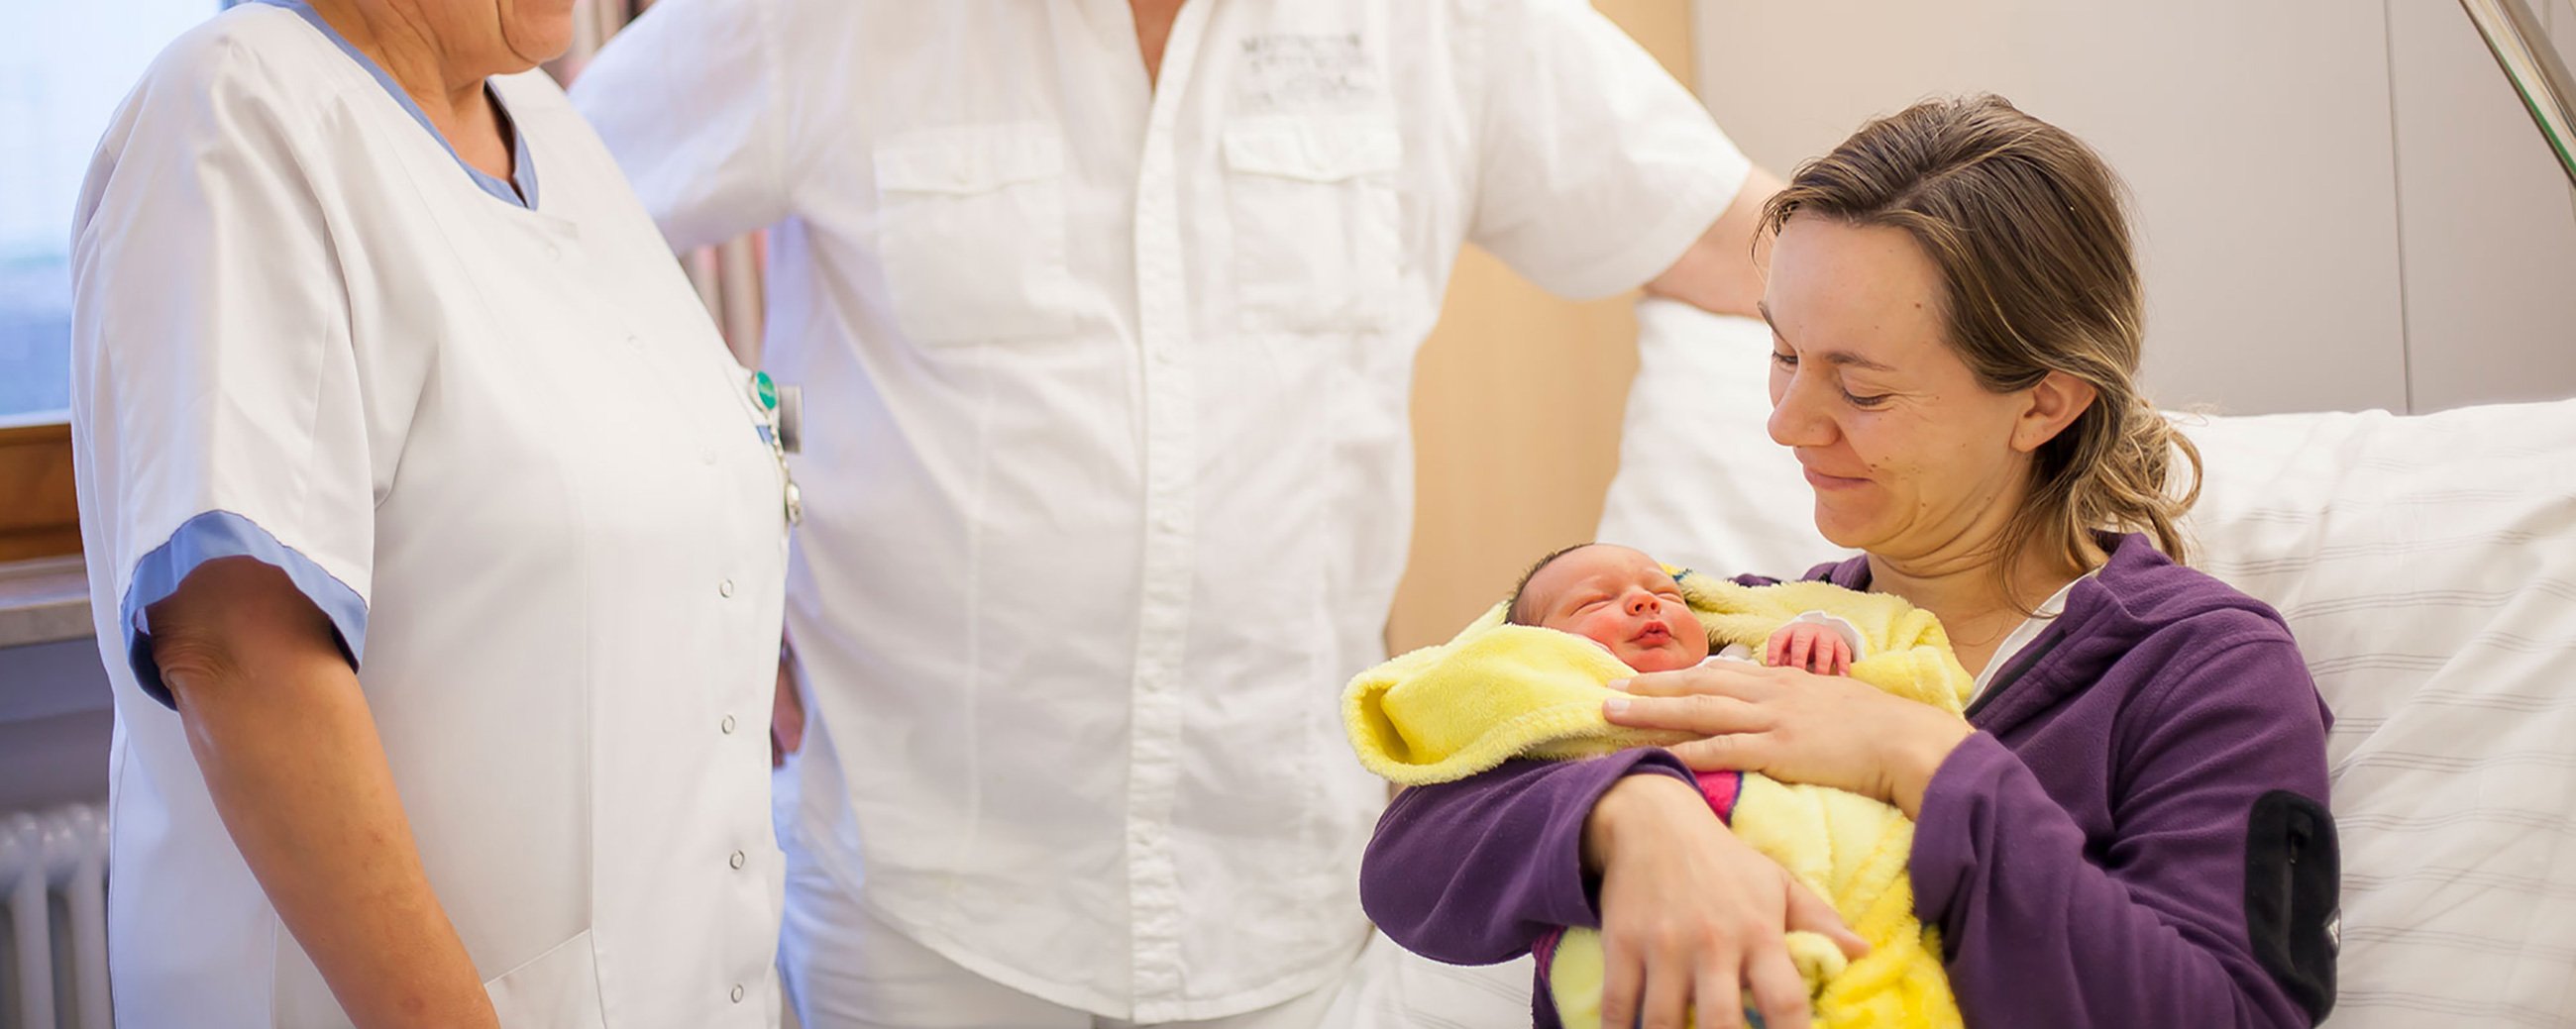 Zwei Ärzte reden mit einer Frau, die im Patientenbett sitzt und ihr neugeborenes Baby im Arm hält